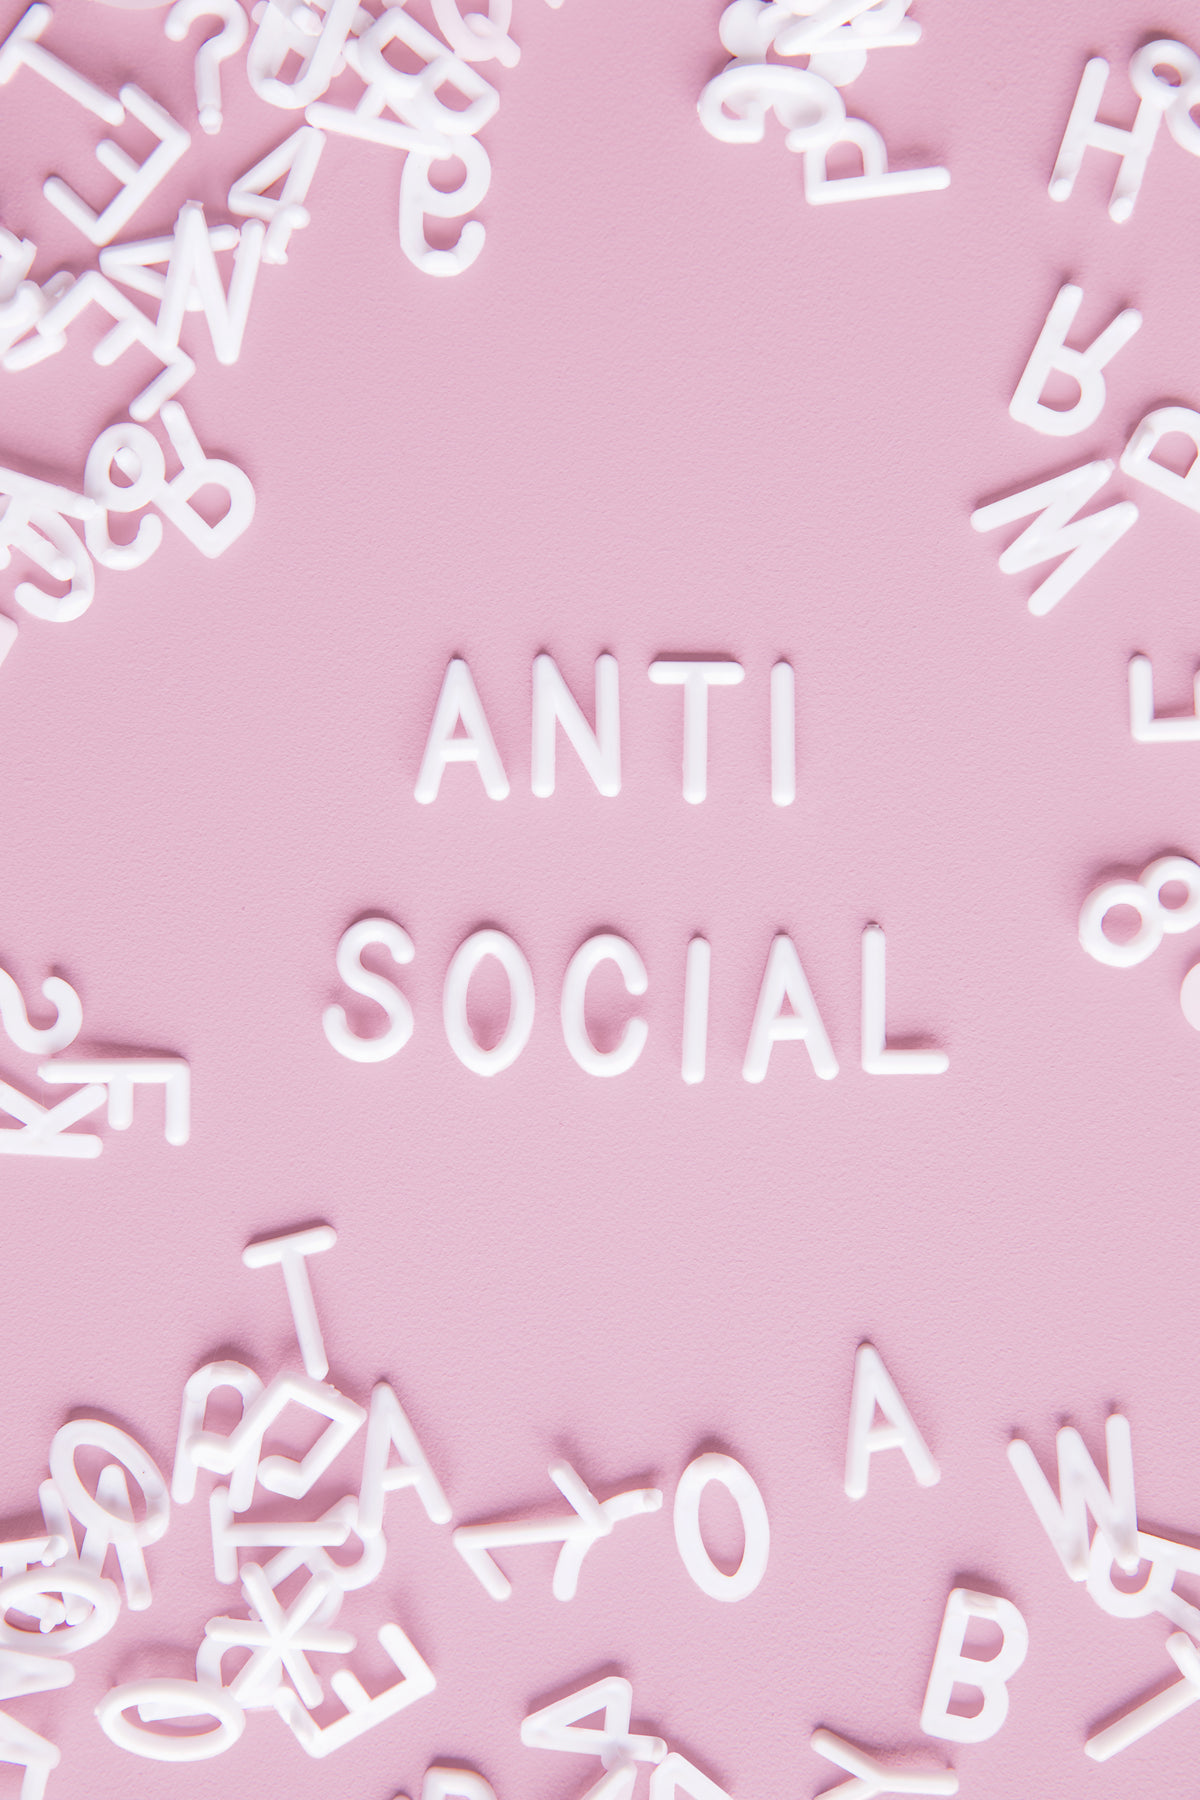 一块粉白相间的字母板上写着“反社会”。